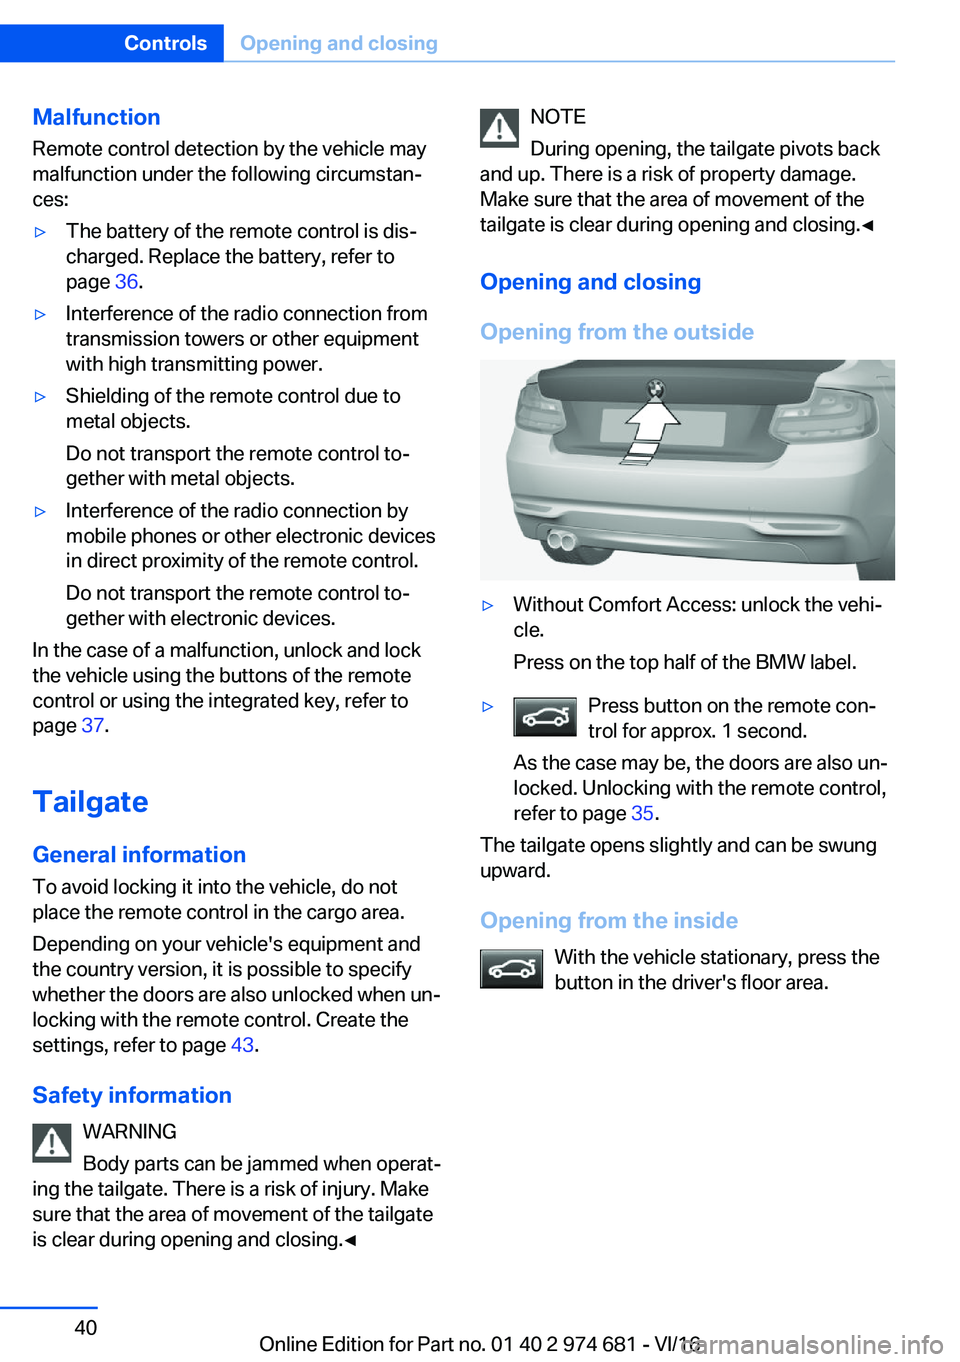 BMW M2 2017 Owners Guide �M�a�l�f�u�n�c�t�i�o�n
�R�e�m�o�t�e� �c�o�n�t�r�o�l� �d�e�t�e�c�t�i�o�n� �b�y� �t�h�e� �v�e�h�i�c�l�e� �m�a�y �m�a�l�f�u�n�c�t�i�o�n� �u�n�d�e�r� �t�h�e� �f�o�l�l�o�w�i�n�g� �c�i�r�c�u�m�s�t�a�nj
�c�